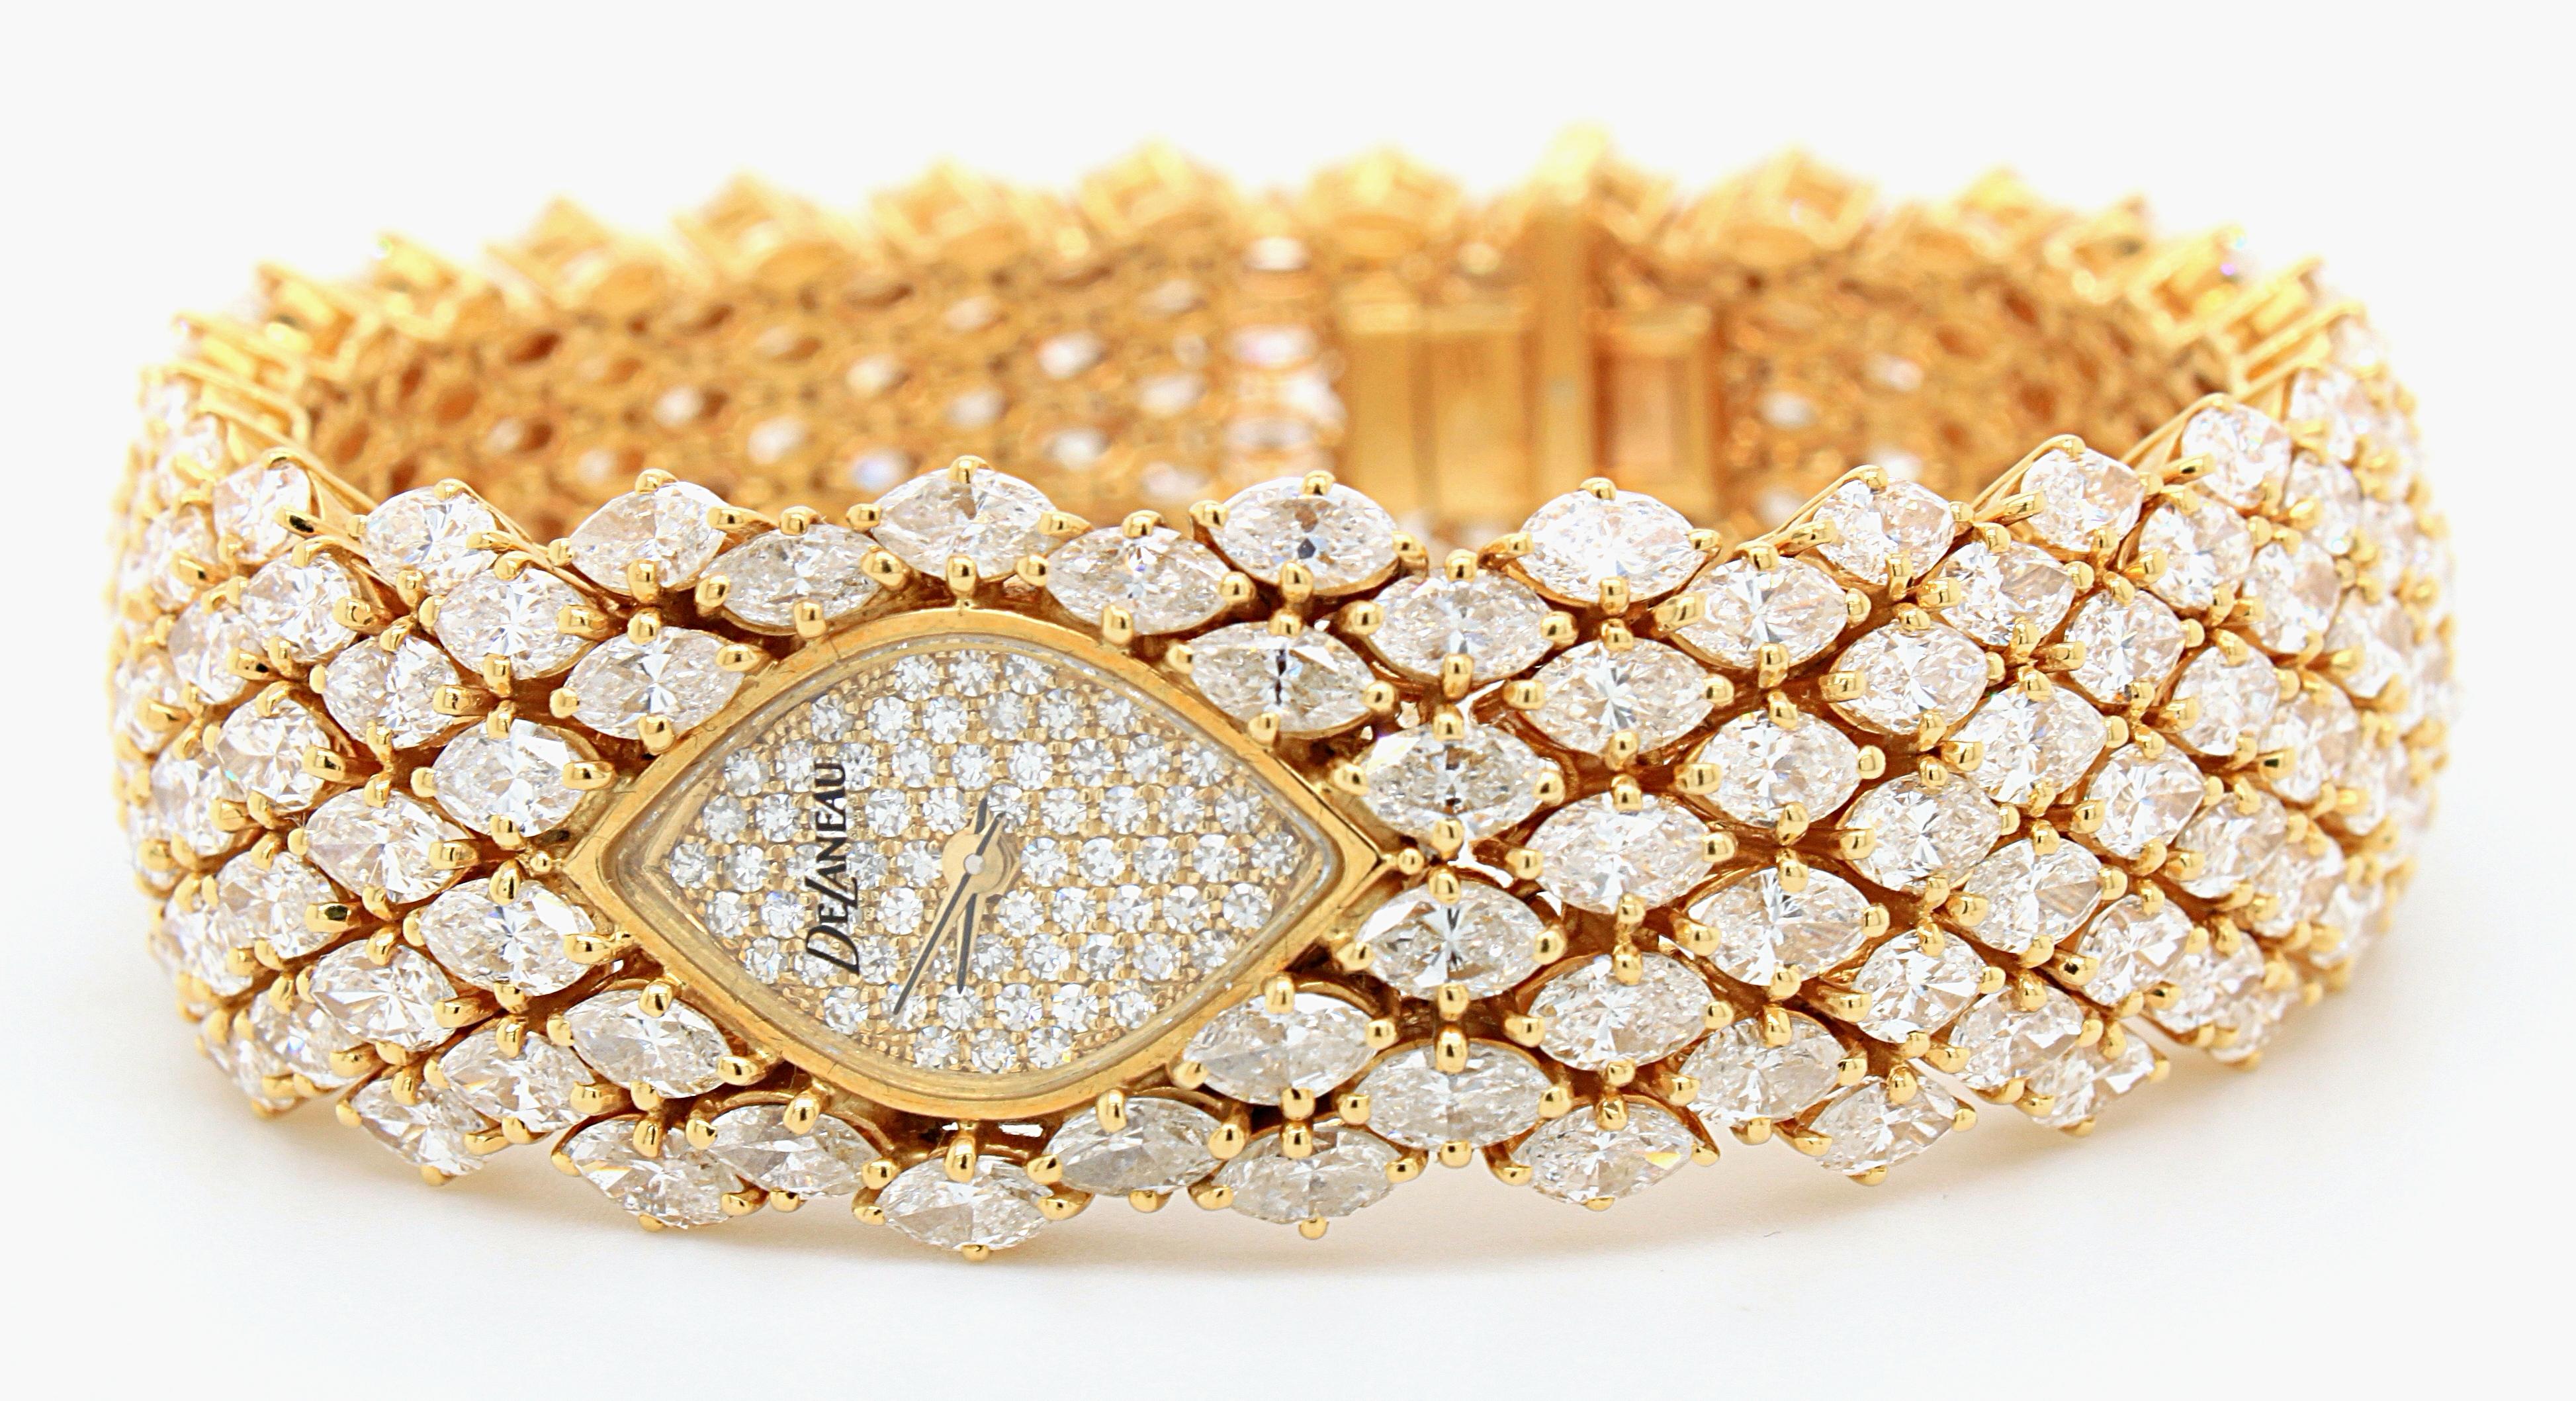 Women's DeLaneau Diamond Watch in 18k Yellow Gold